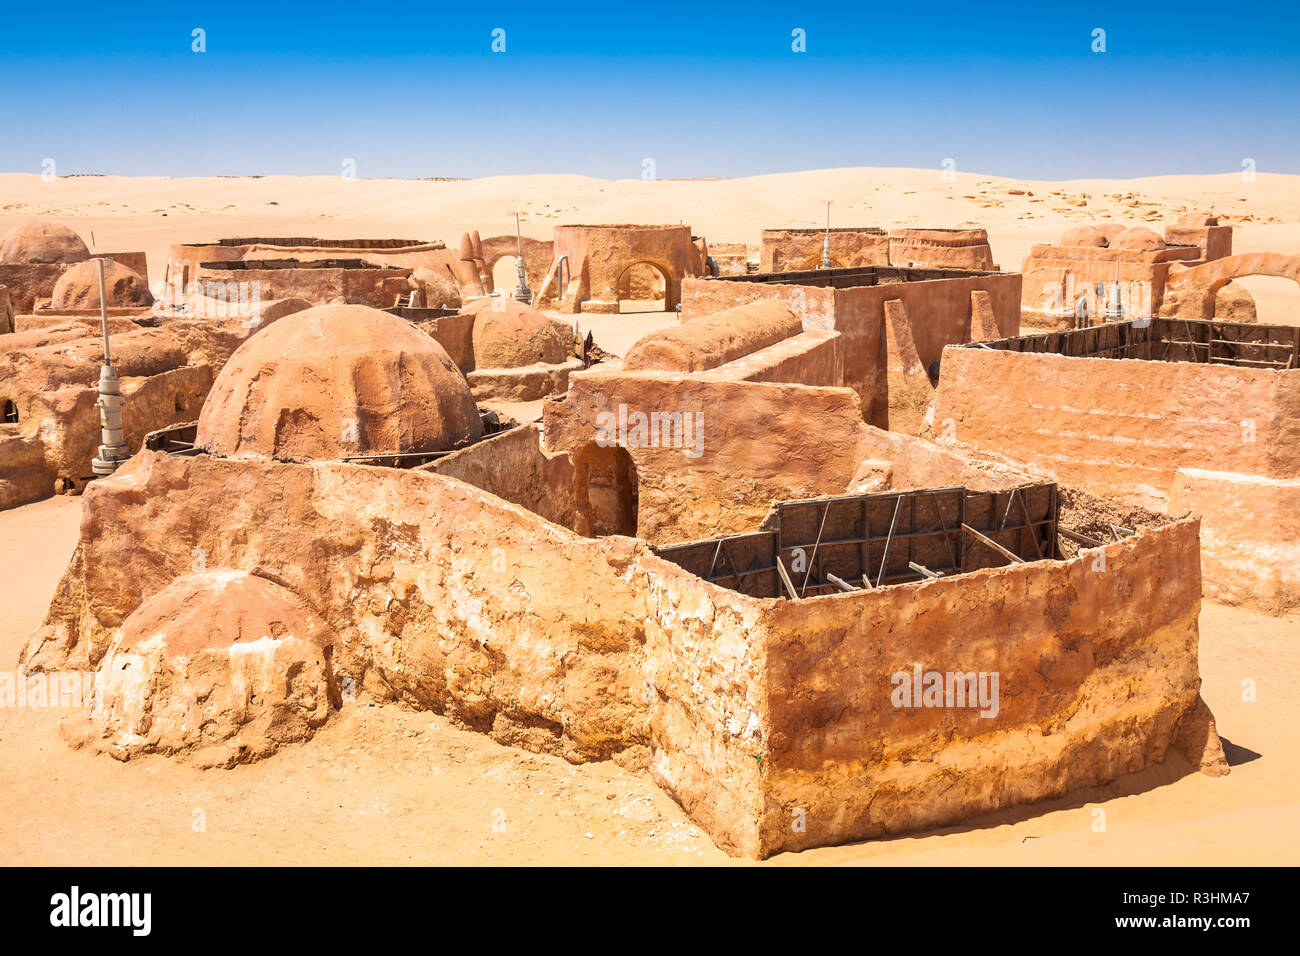 Les maisons à partir de la planète tatouine - film star wars set,nefta Tunisie. Banque D'Images